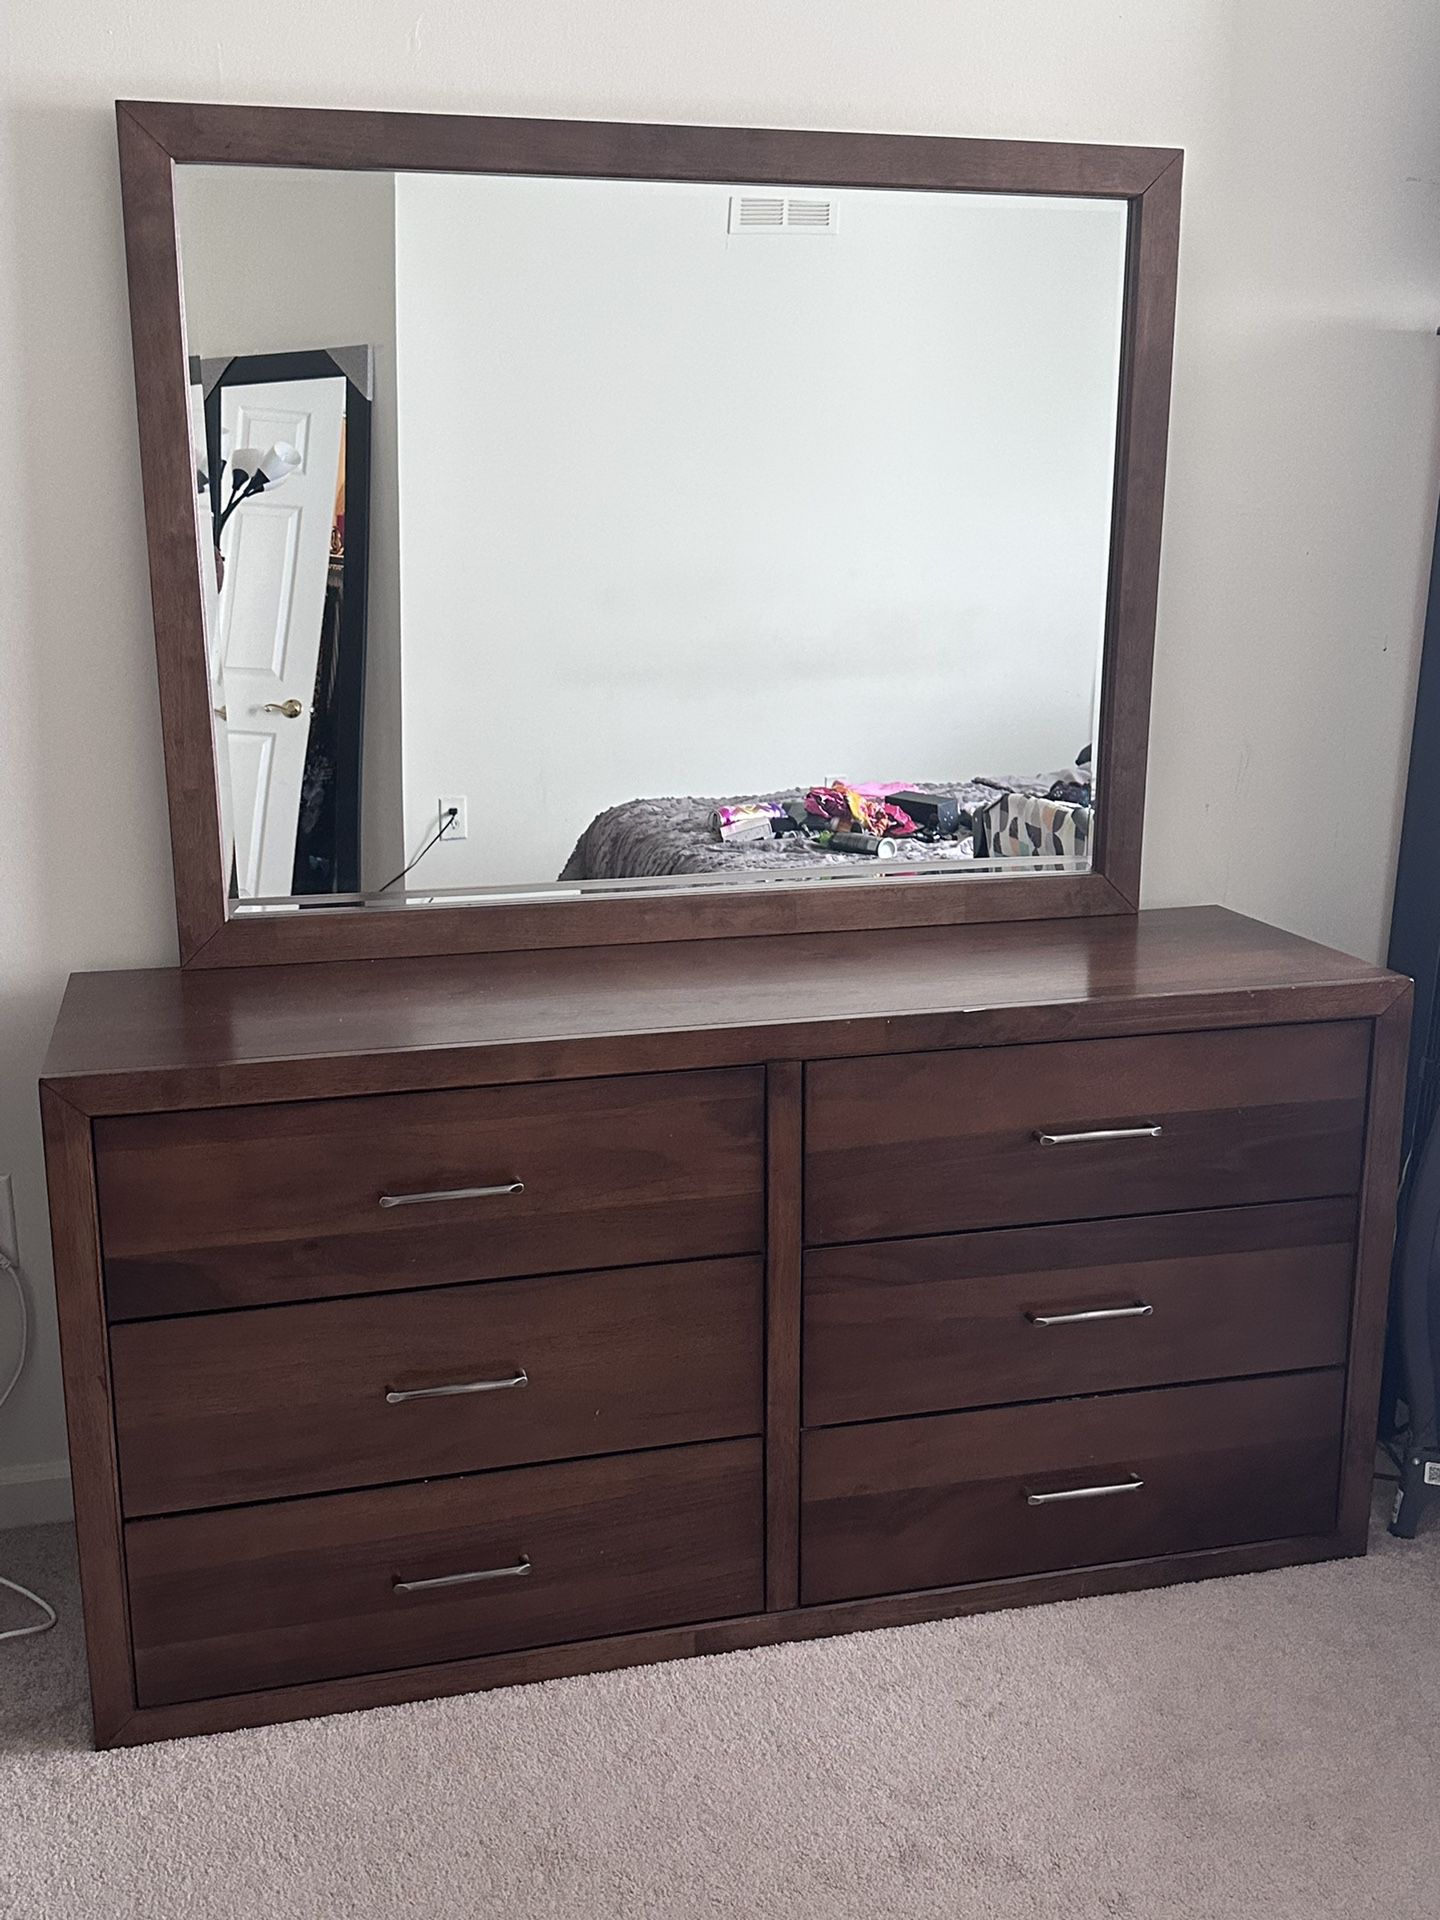 6 Drawer Dresser with mirror 